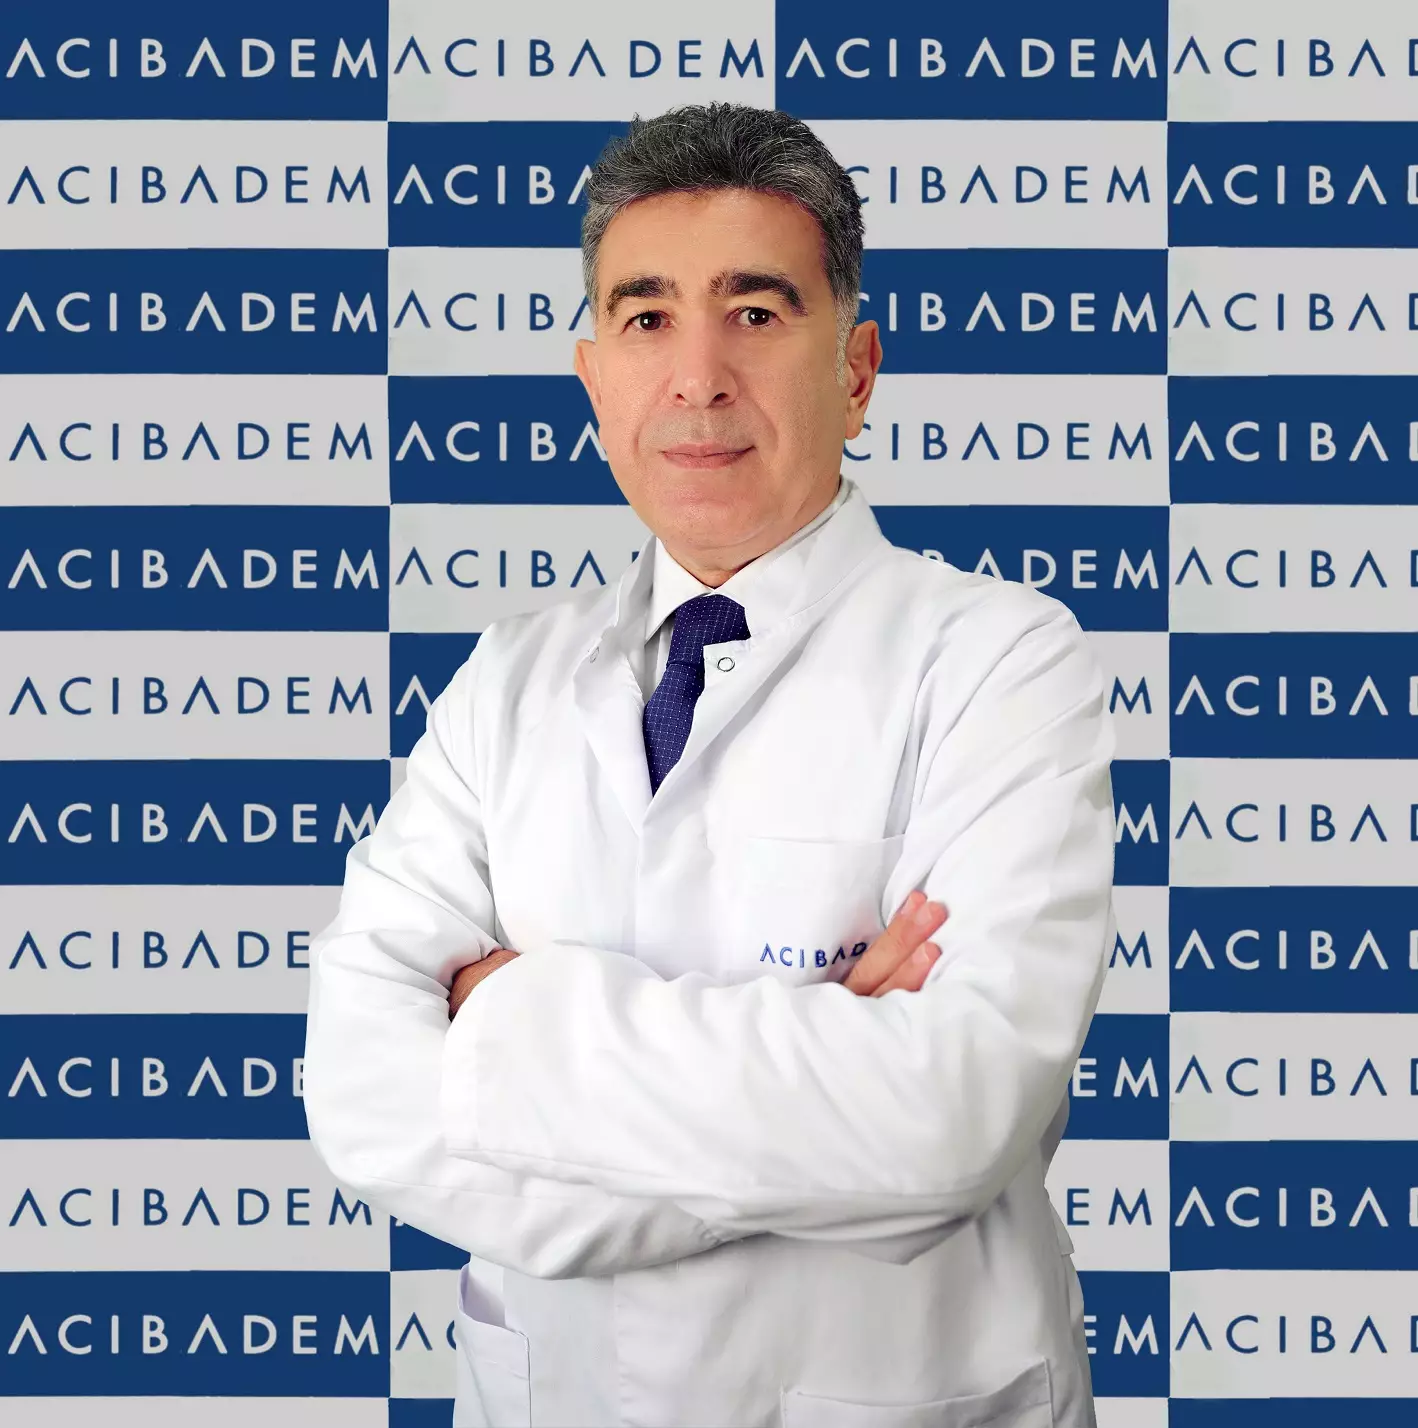 Профессор инфекционных заболеваний и клинической микробиологии из сети клиник Acıbadem Чагры Буке